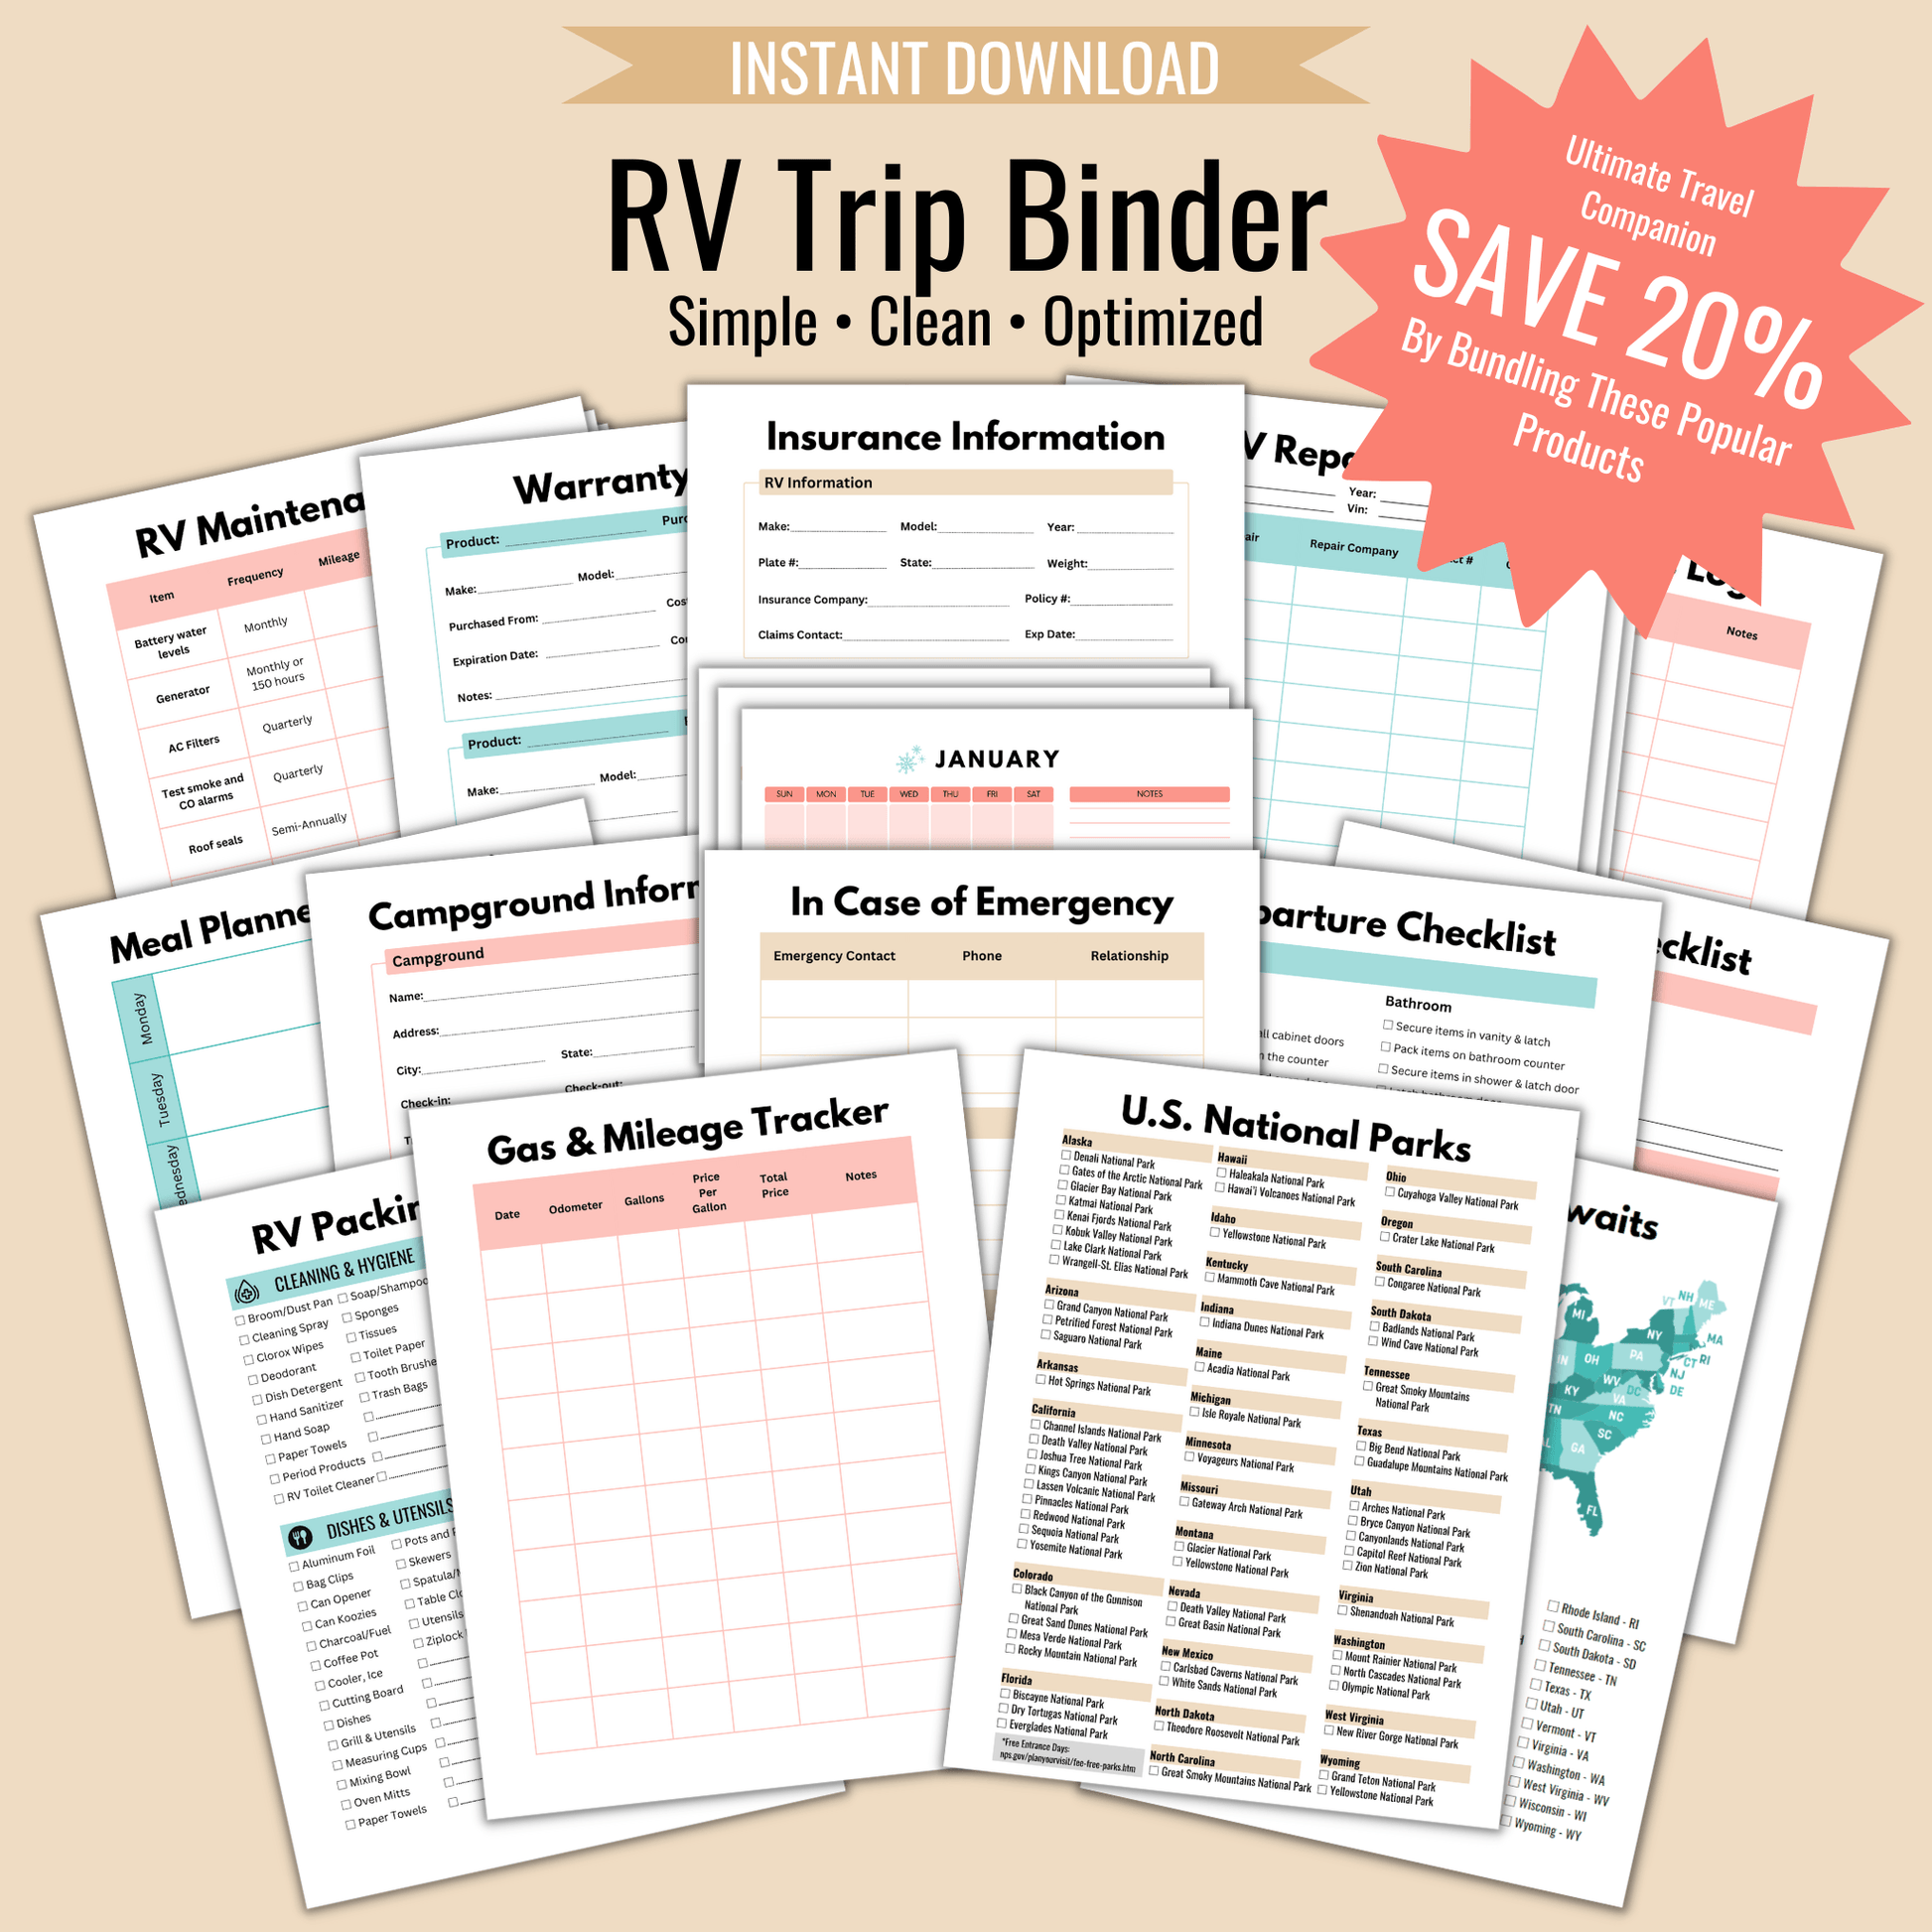 RV Trip Binder - Camper FAQs